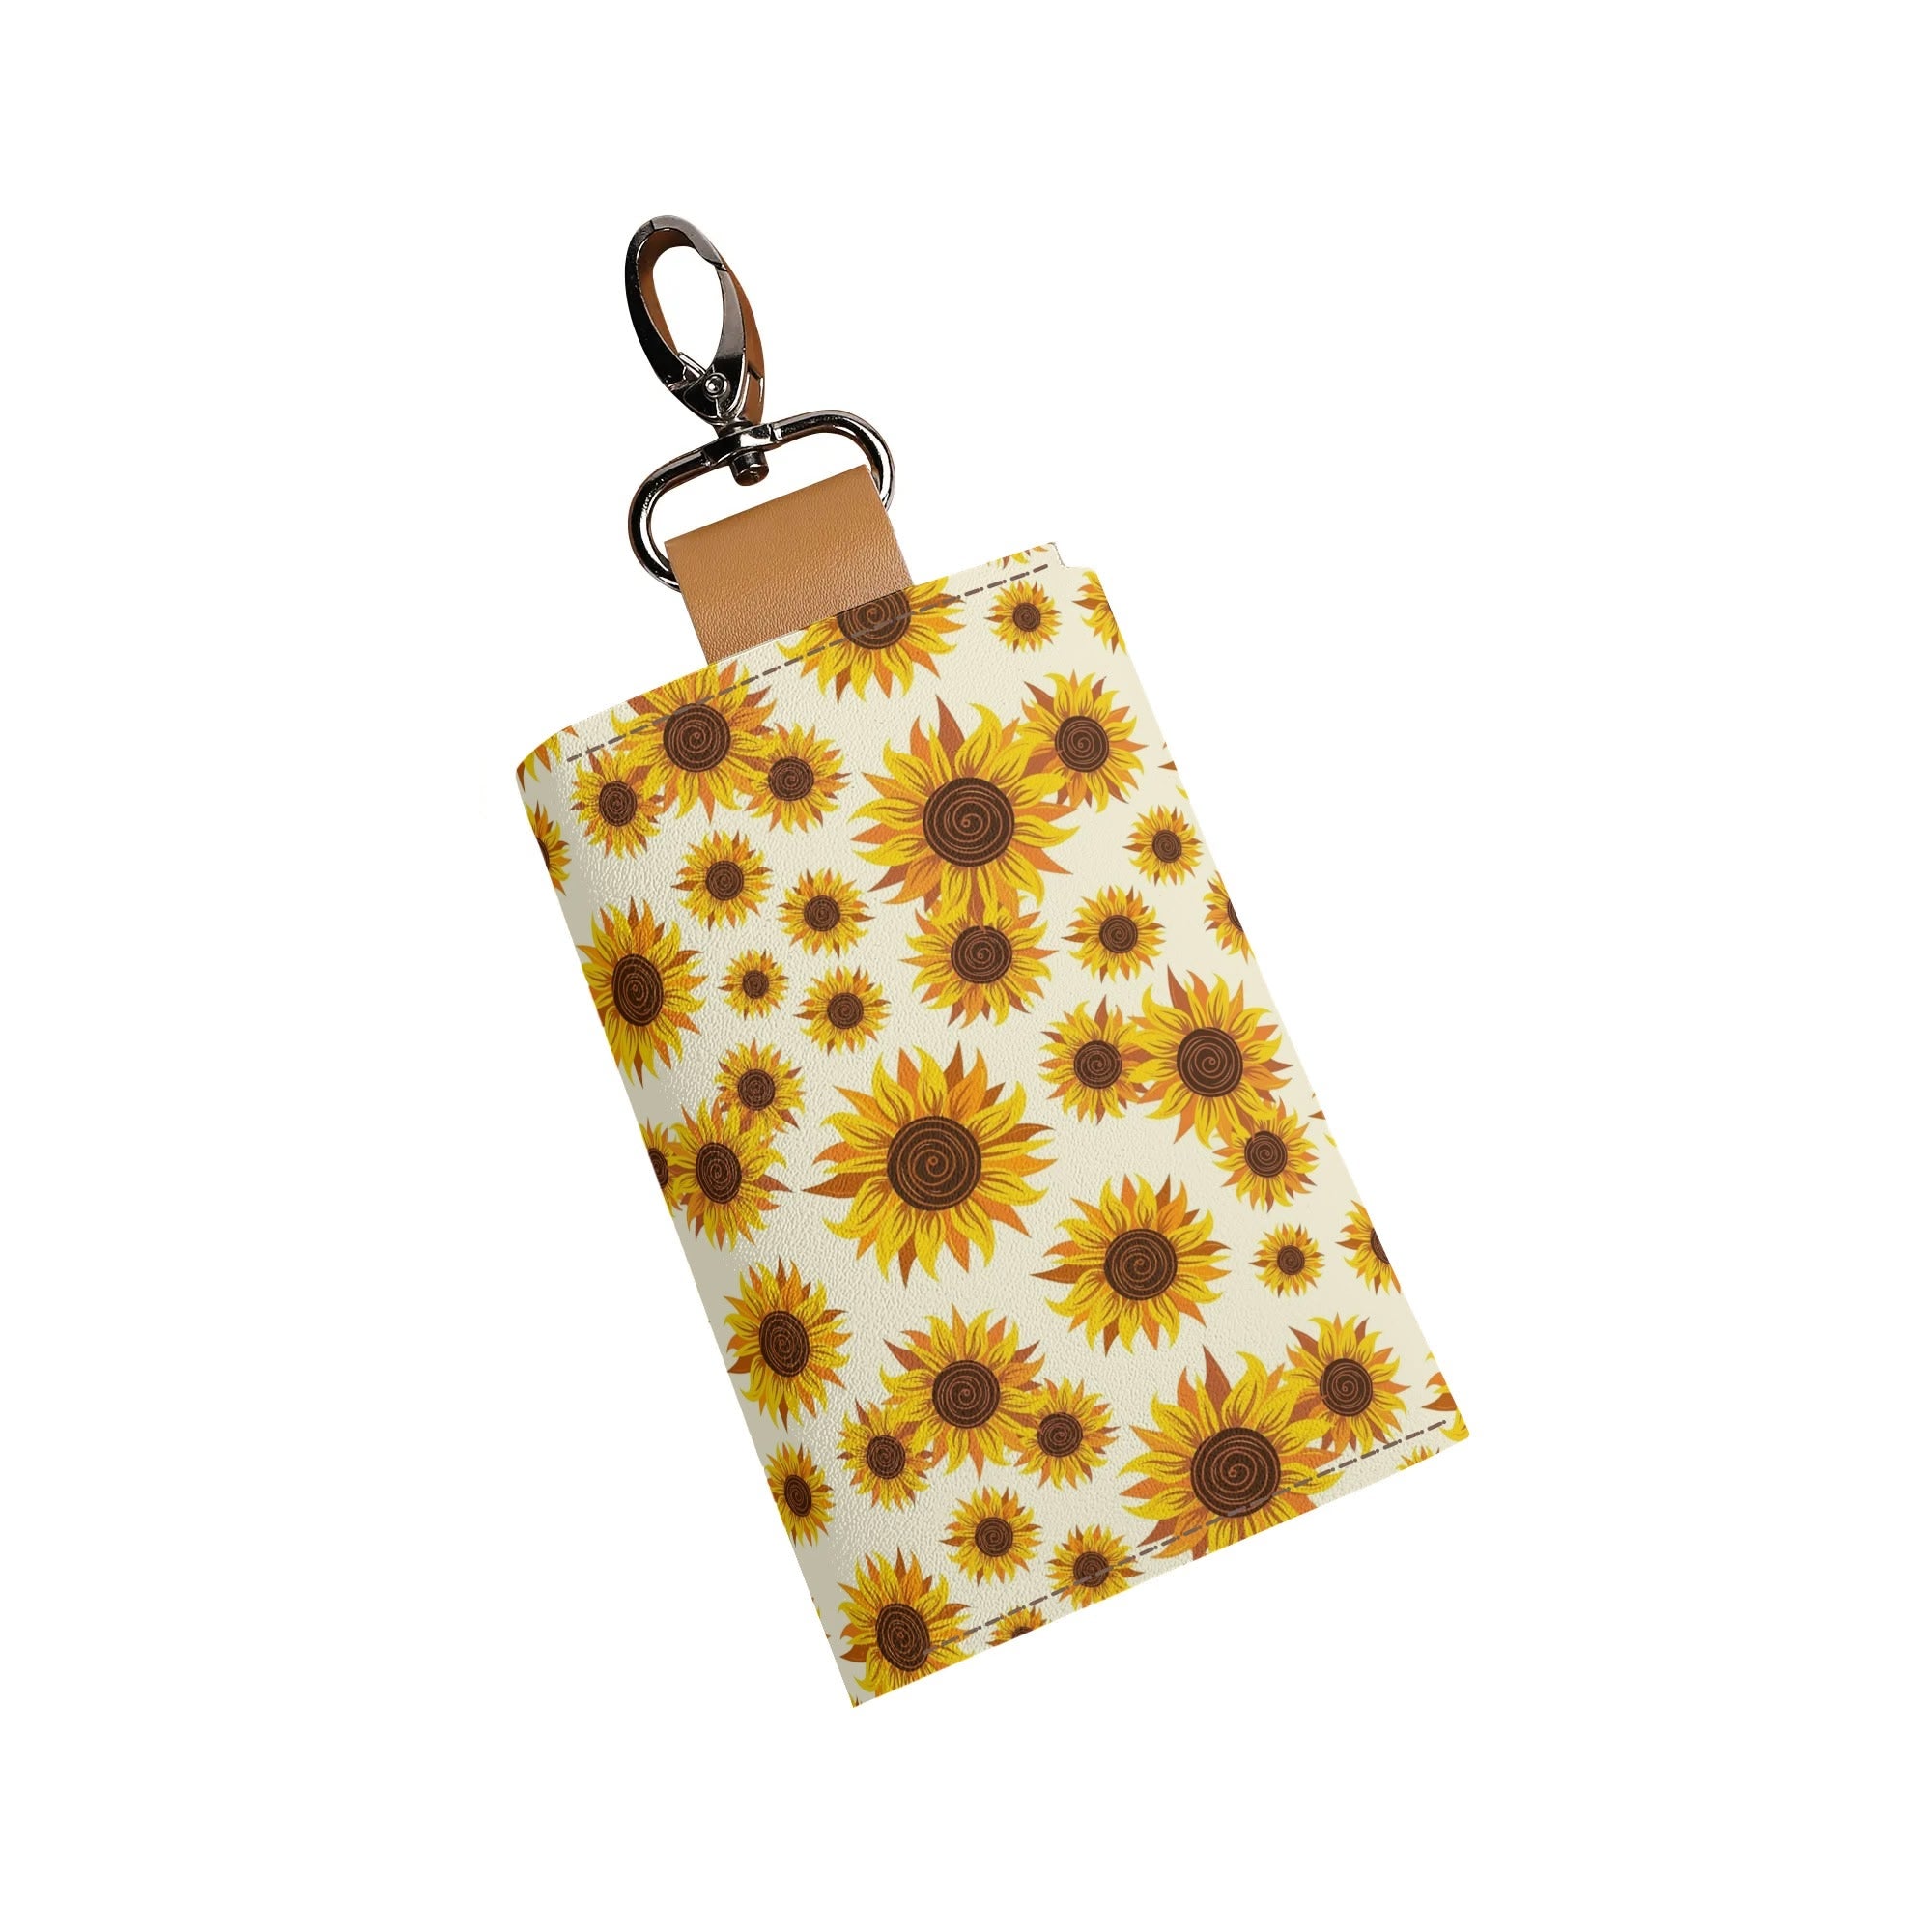 Women's Faux Leather Keychain Purse - Sunflower Swirls